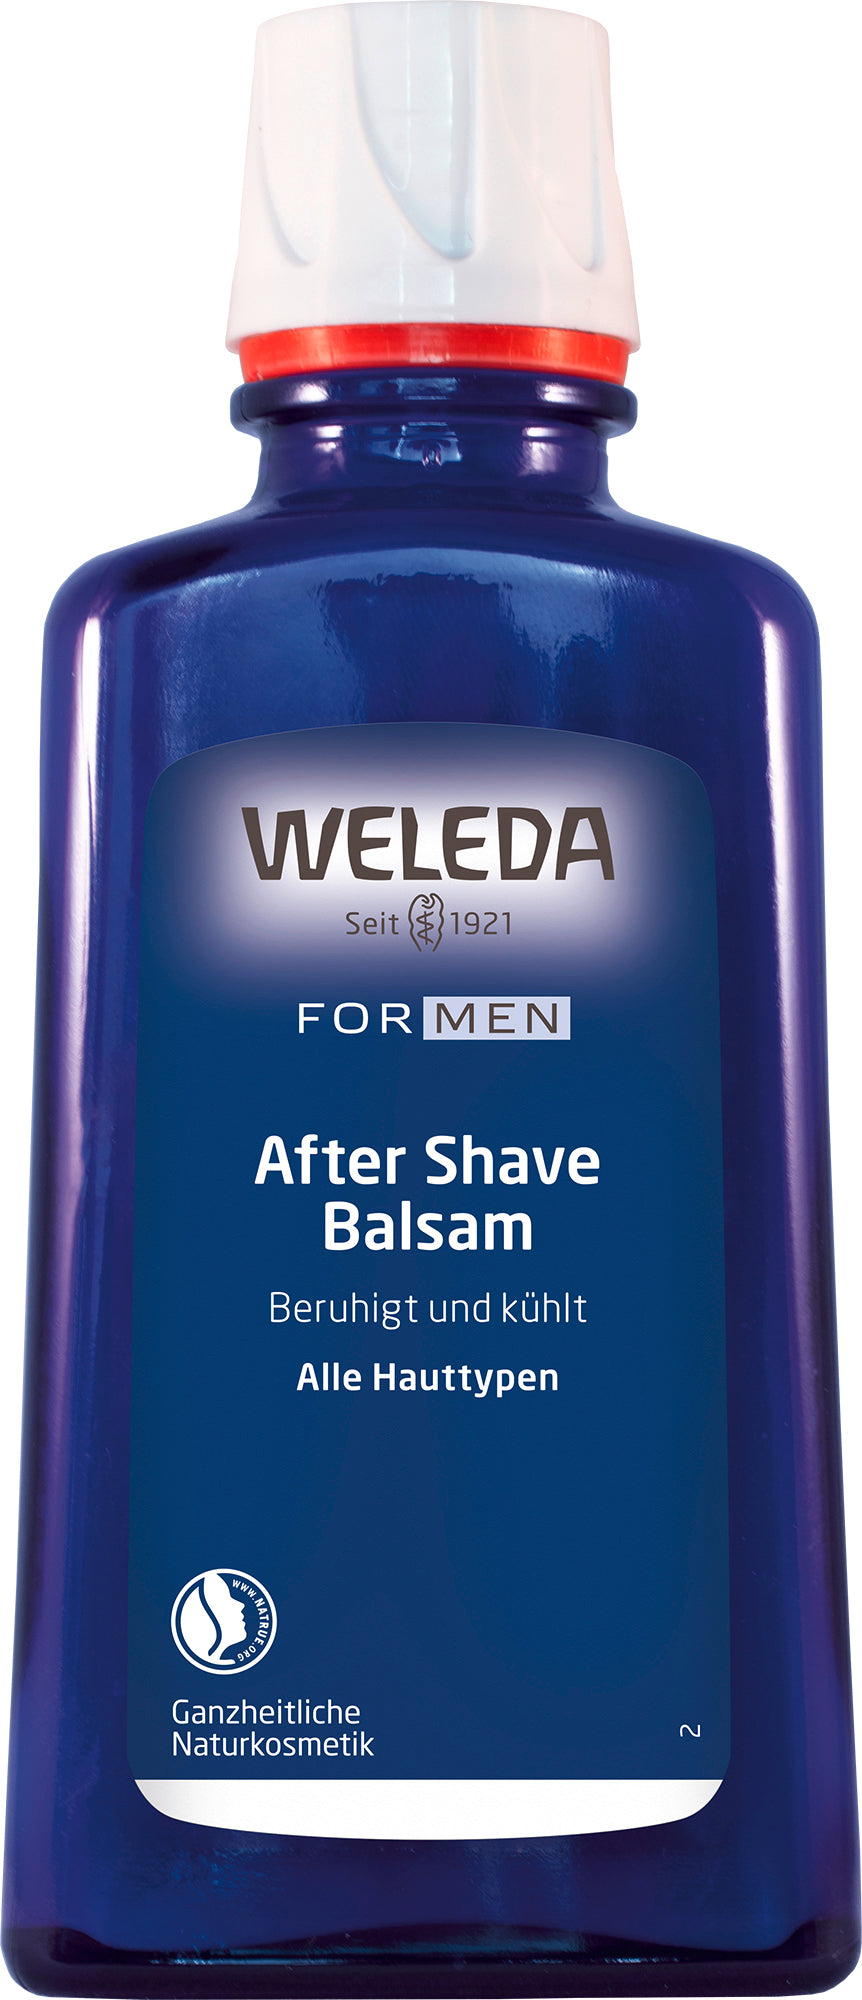 Weleda - After Shave Balsam 100 ml